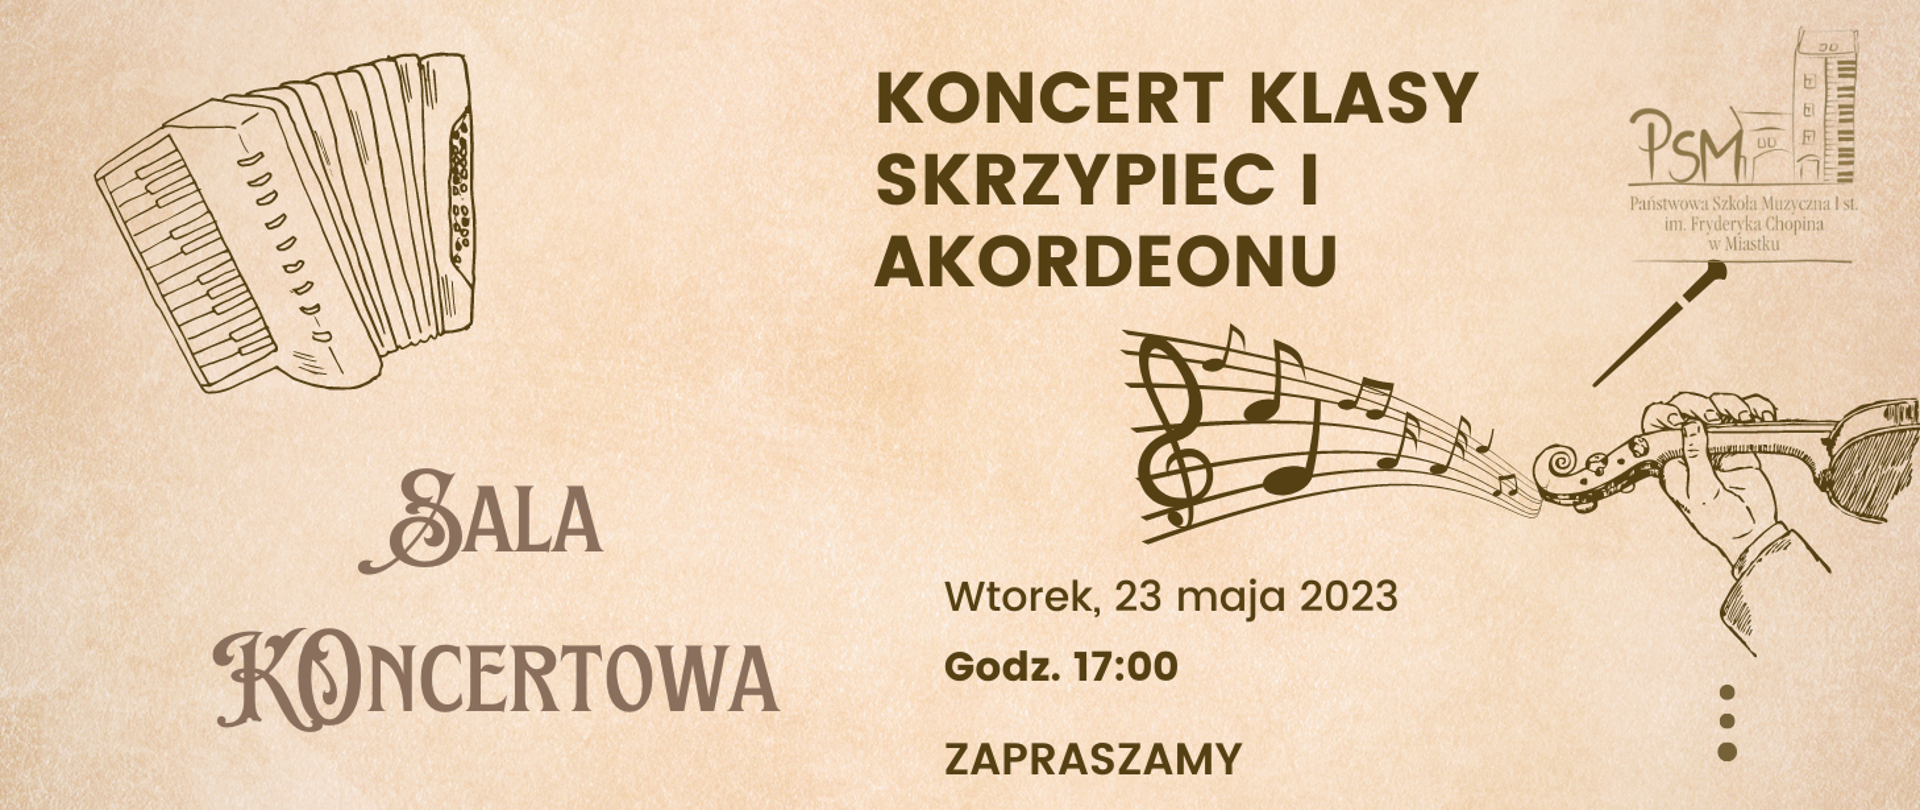 Grafika informująca o koncercie uczniów klasy skrzypiec i akordeonu 23 maja 2023 r. o godz. 17:00 w sali koncertowej naszej szkoły.